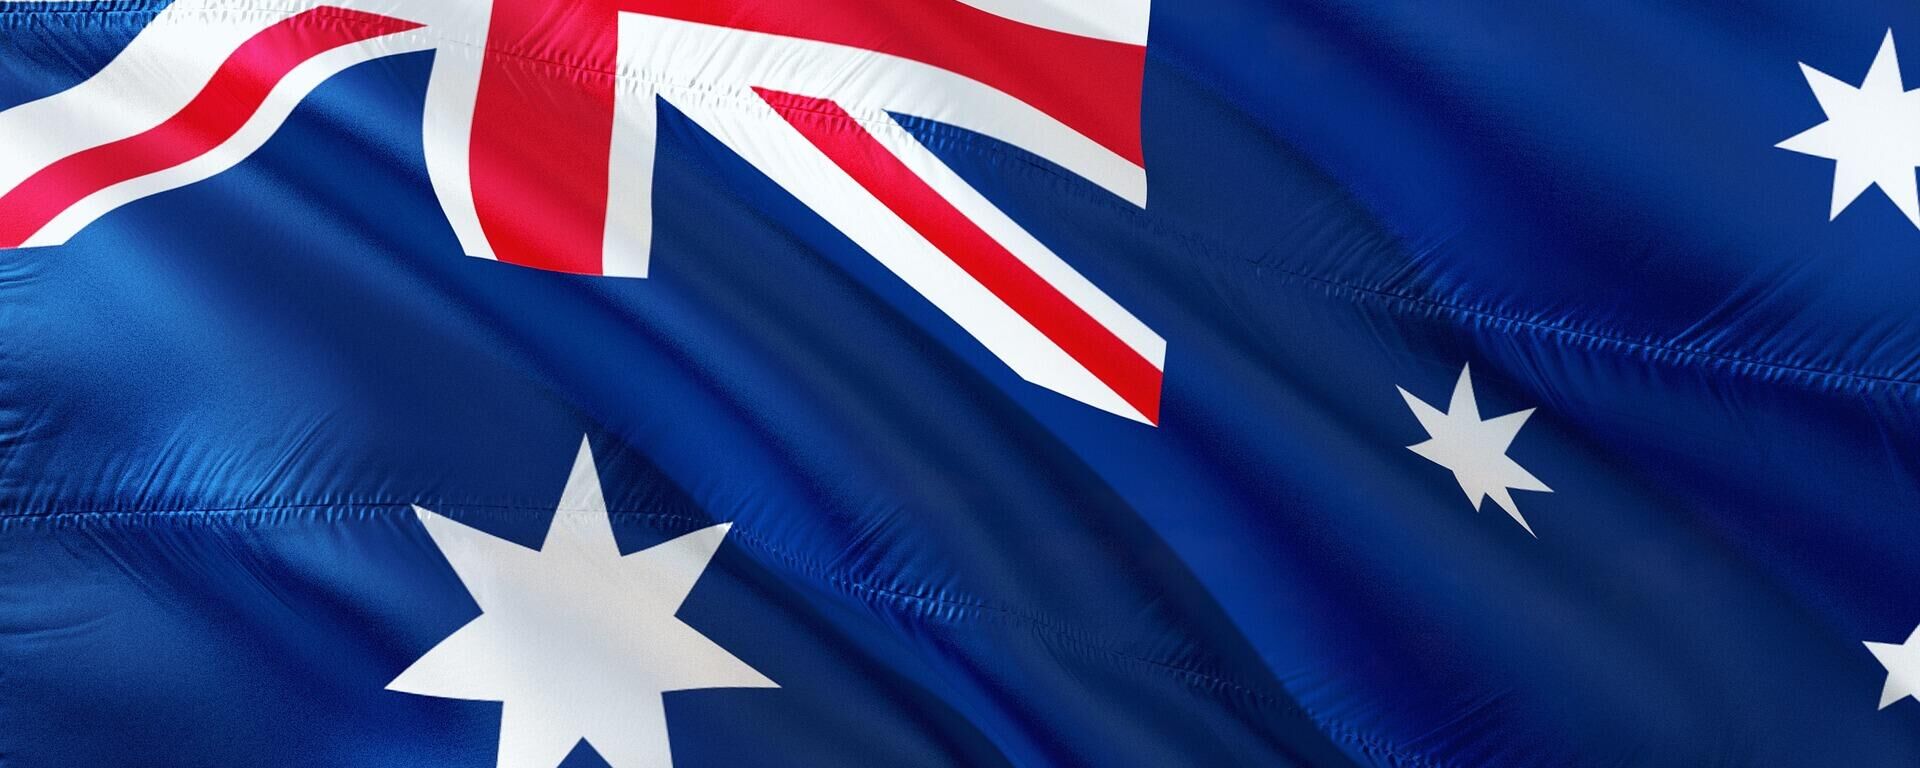 La bandera de Australia - Sputnik Mundo, 1920, 01.10.2021